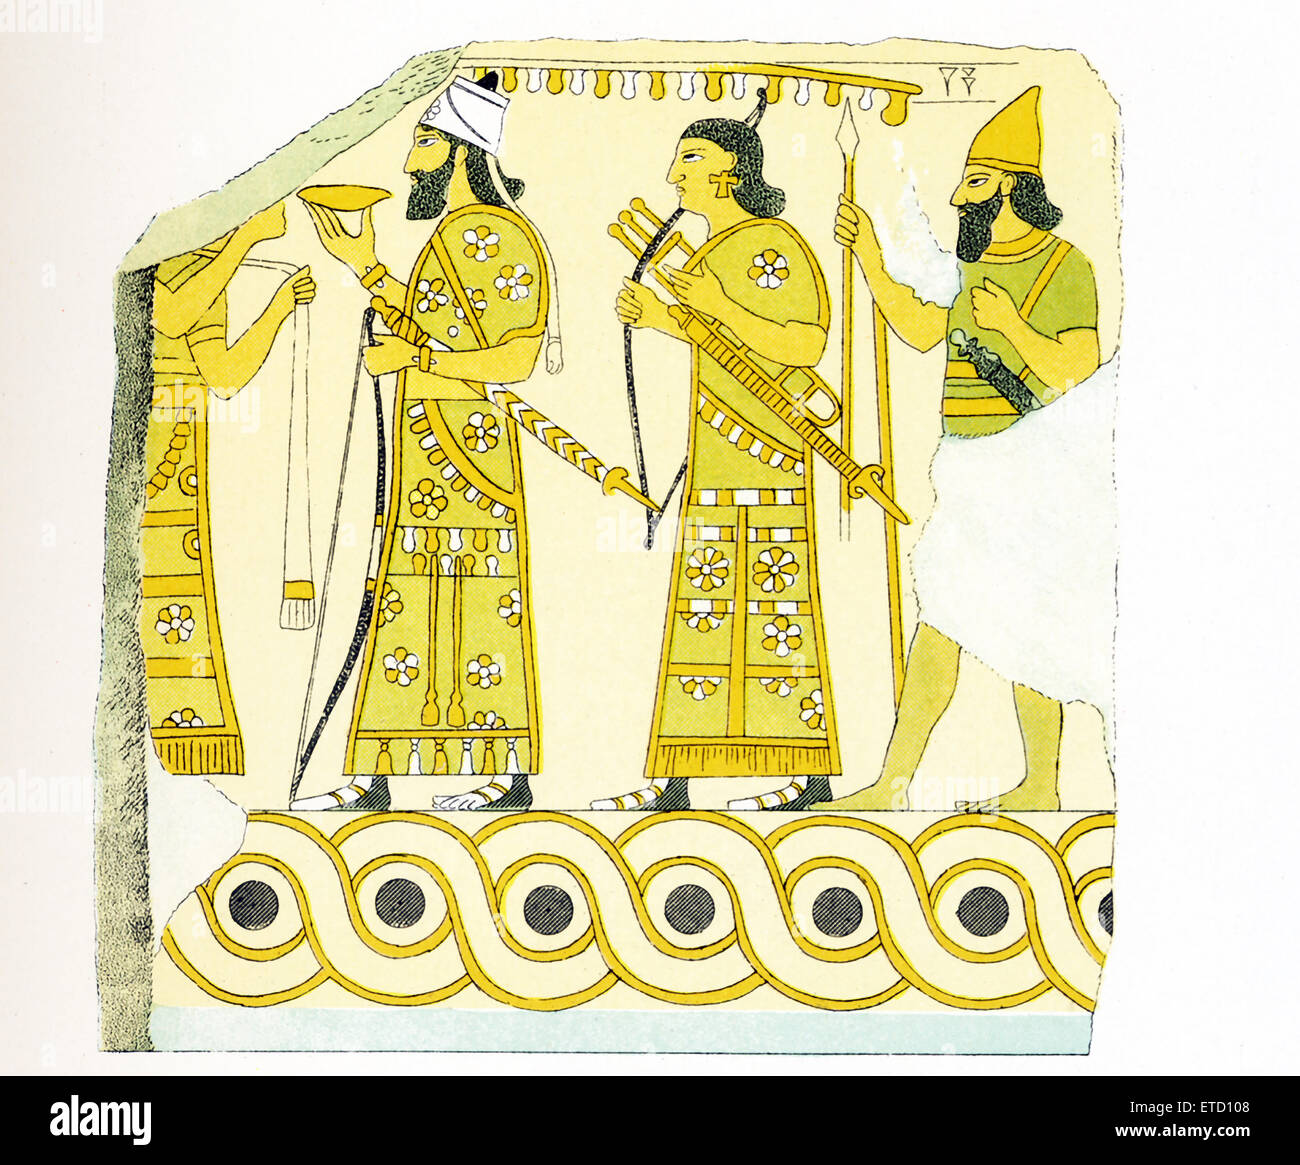 Il righello assira Asurnasirpal III del palazzo a Nimrud (antica Kalhu) è nell attuale Iraq la città era sulle rive del fiume Tigri. Questa illustrazione mostra un frammento di mattoni smaltati trovati a Nimrud. È probabile che la maggior parte dei palazzi Assiri vernice aveva almeno nelle sale di ricevimento. Ashurnasirpal (governata 883-859 a.C.) registrati che aveva rappresentato il suo trionfa in dipinti. Ci sono stati dei murales sulle pareti sopra la pietra scolpita pannelli e i soffitti erano anche verniciato. Mattoni smaltati sono indicati per primi nella seconda metà del secondo millennio A.C. quando la padronanza di Foto Stock